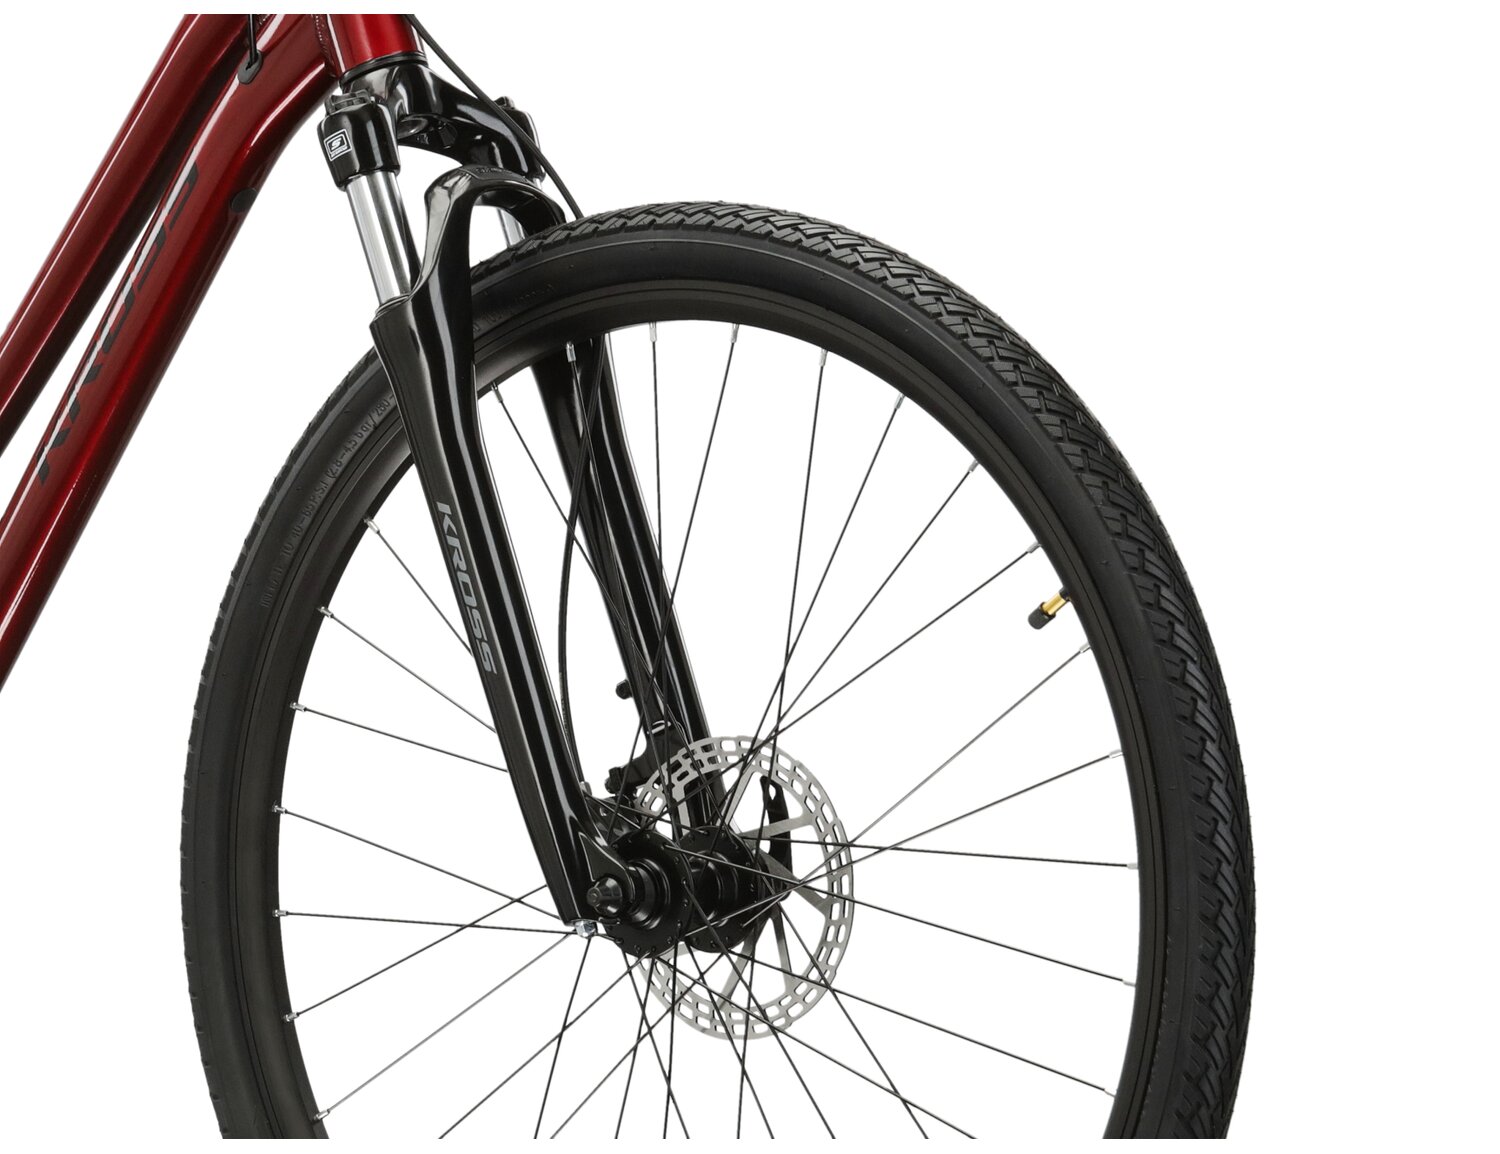 Aluminowa rama, amortyzowany widelec SR SUNTOUR NEX oraz opony Wanda w rowerze crossowym damskim KROSS Evado 4.0 